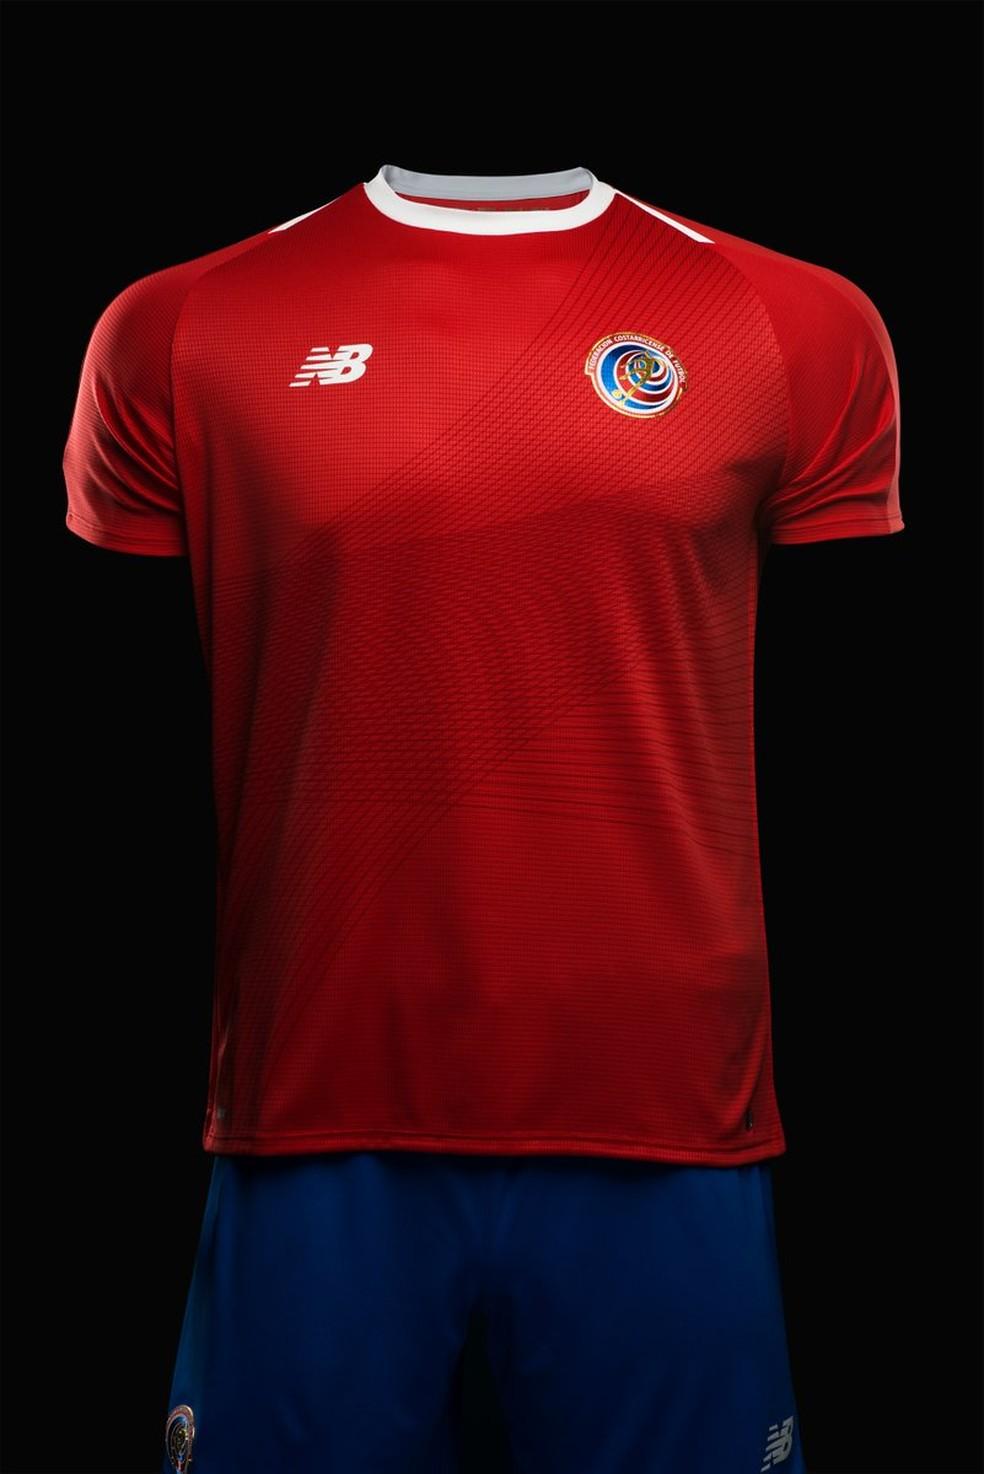 Novo uniforma da Costa Rica (Foto: Reprodução Twitter)